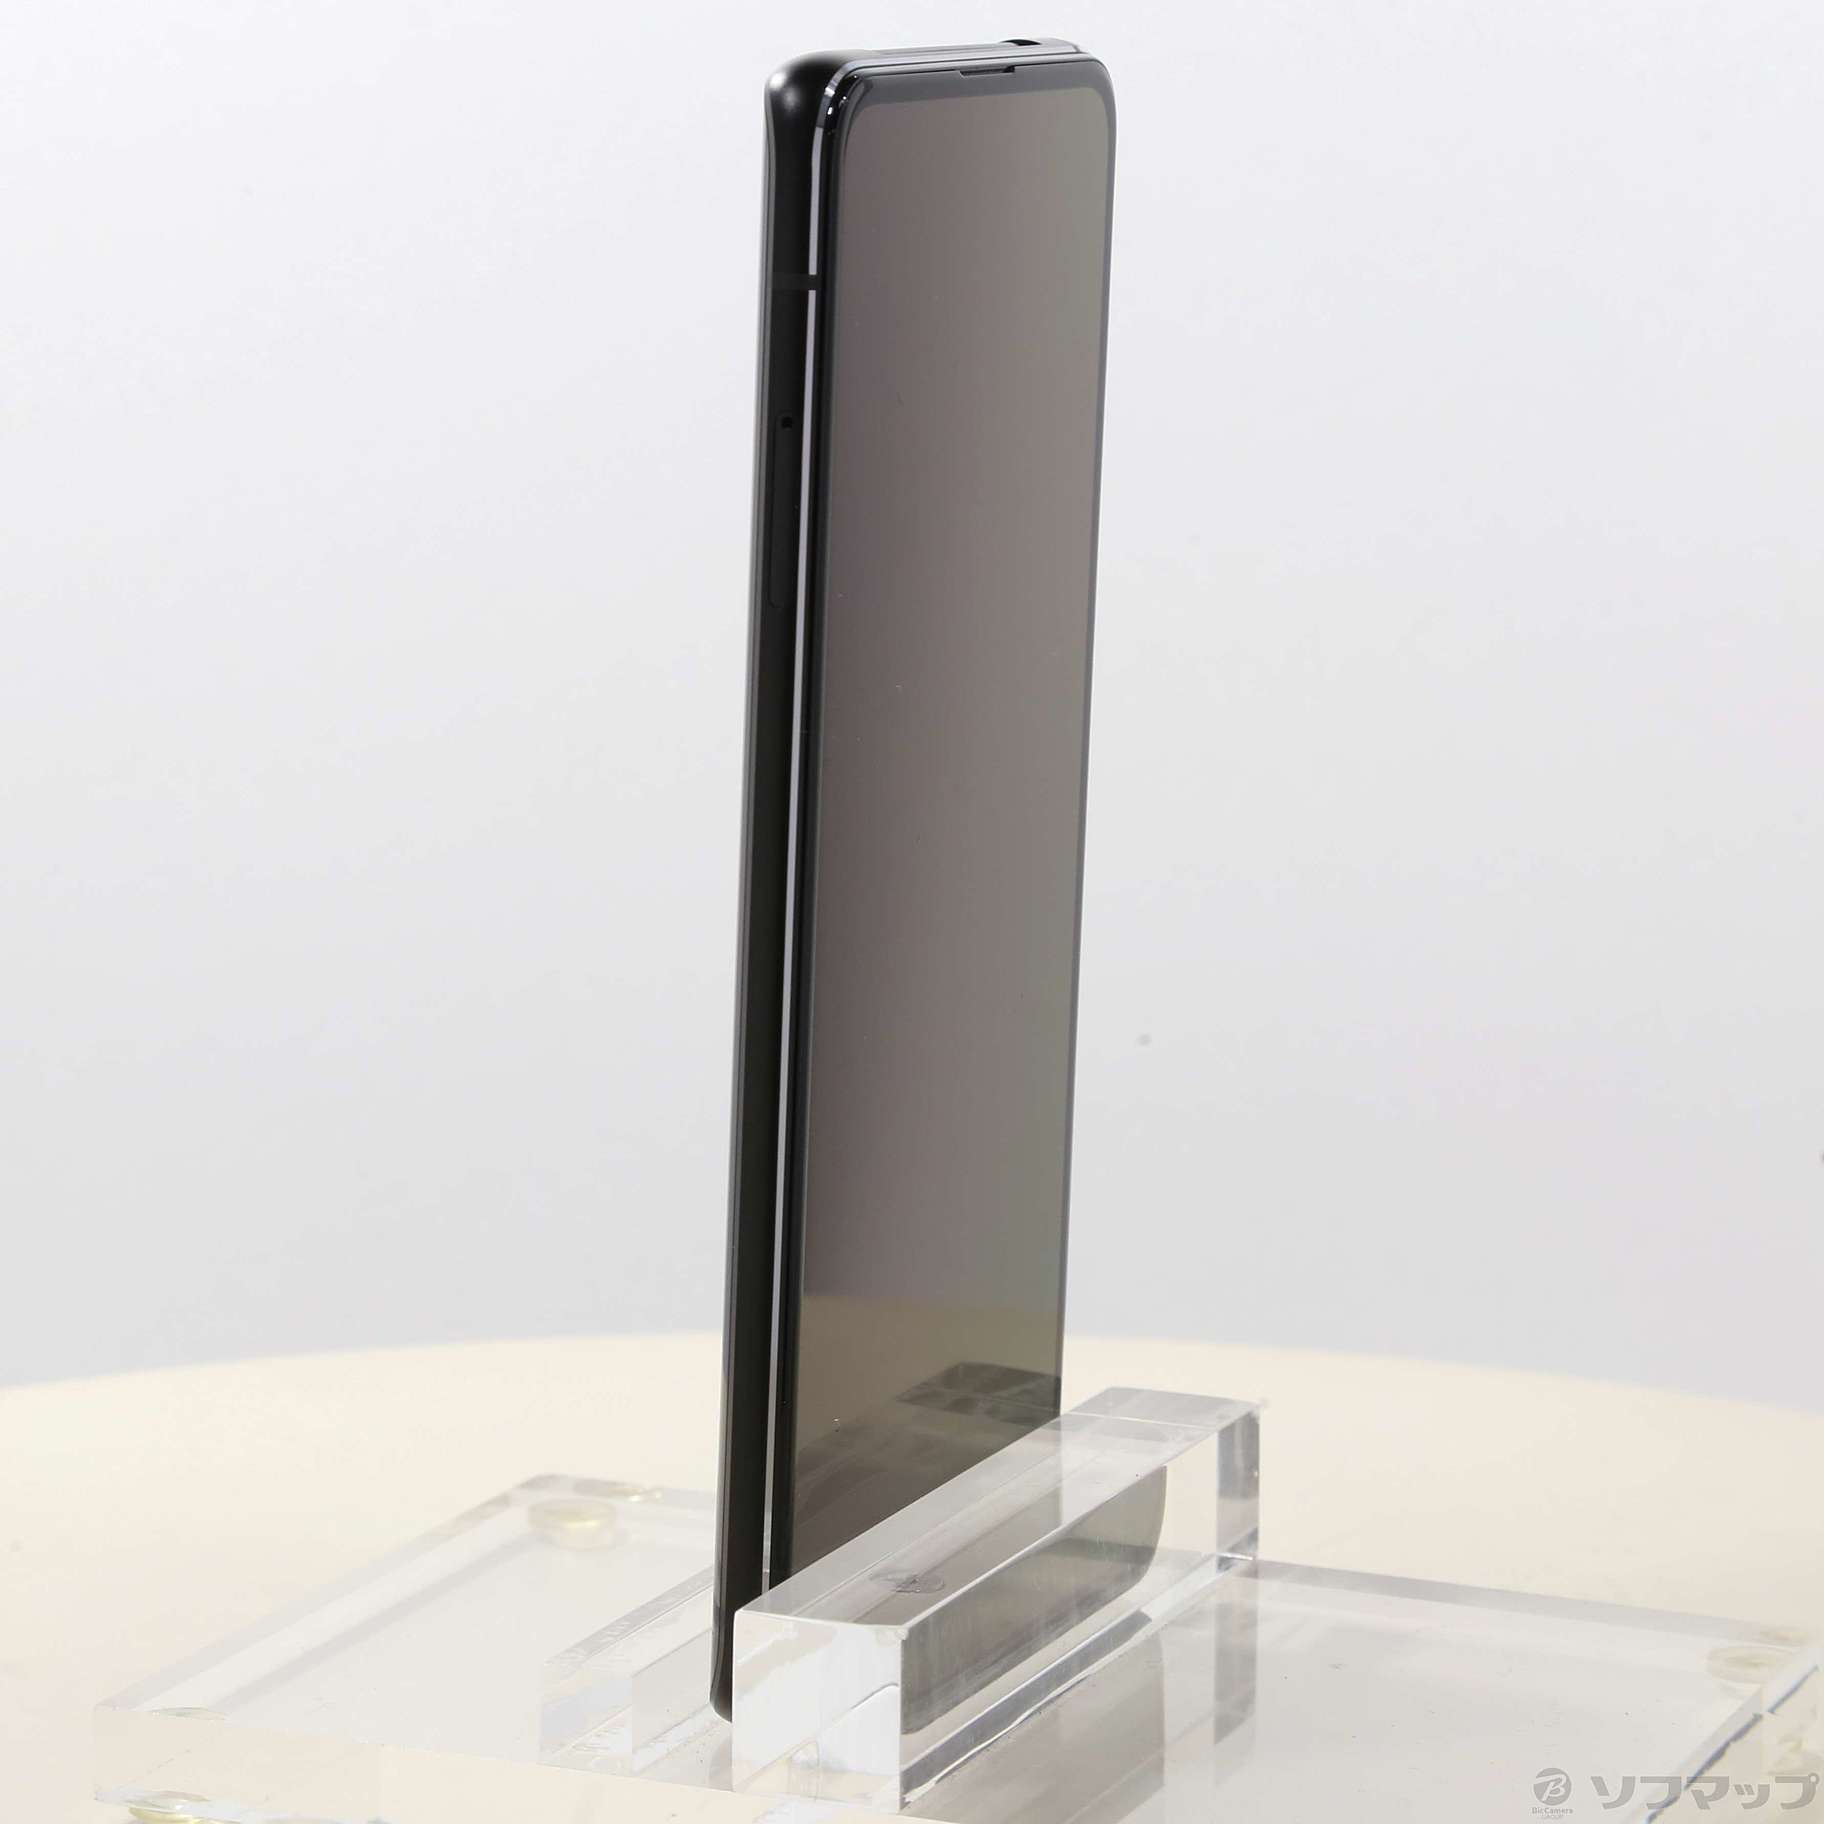 中古】ZenFone 7 128GB オーロラブラック ZS670KS-BK128S8 SIMフリー ...